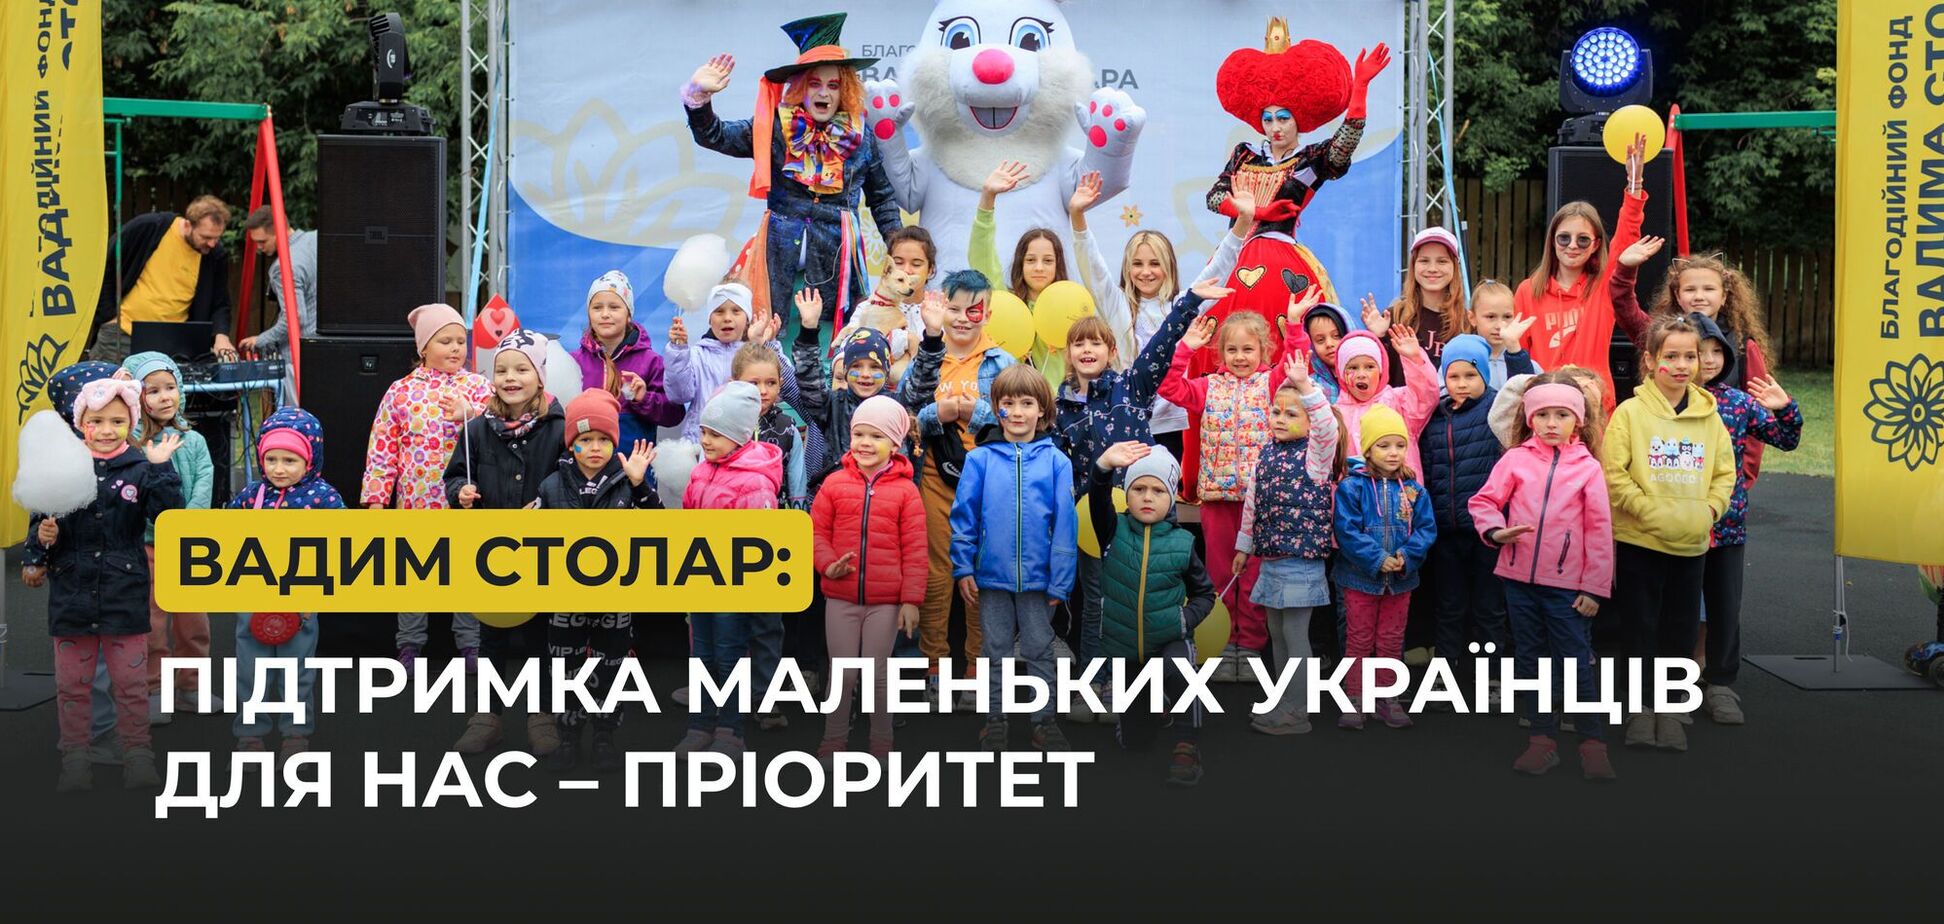 Війна позбавила дітей простих радощів: Вадим Столар розповів про допомогу маленьким українцям